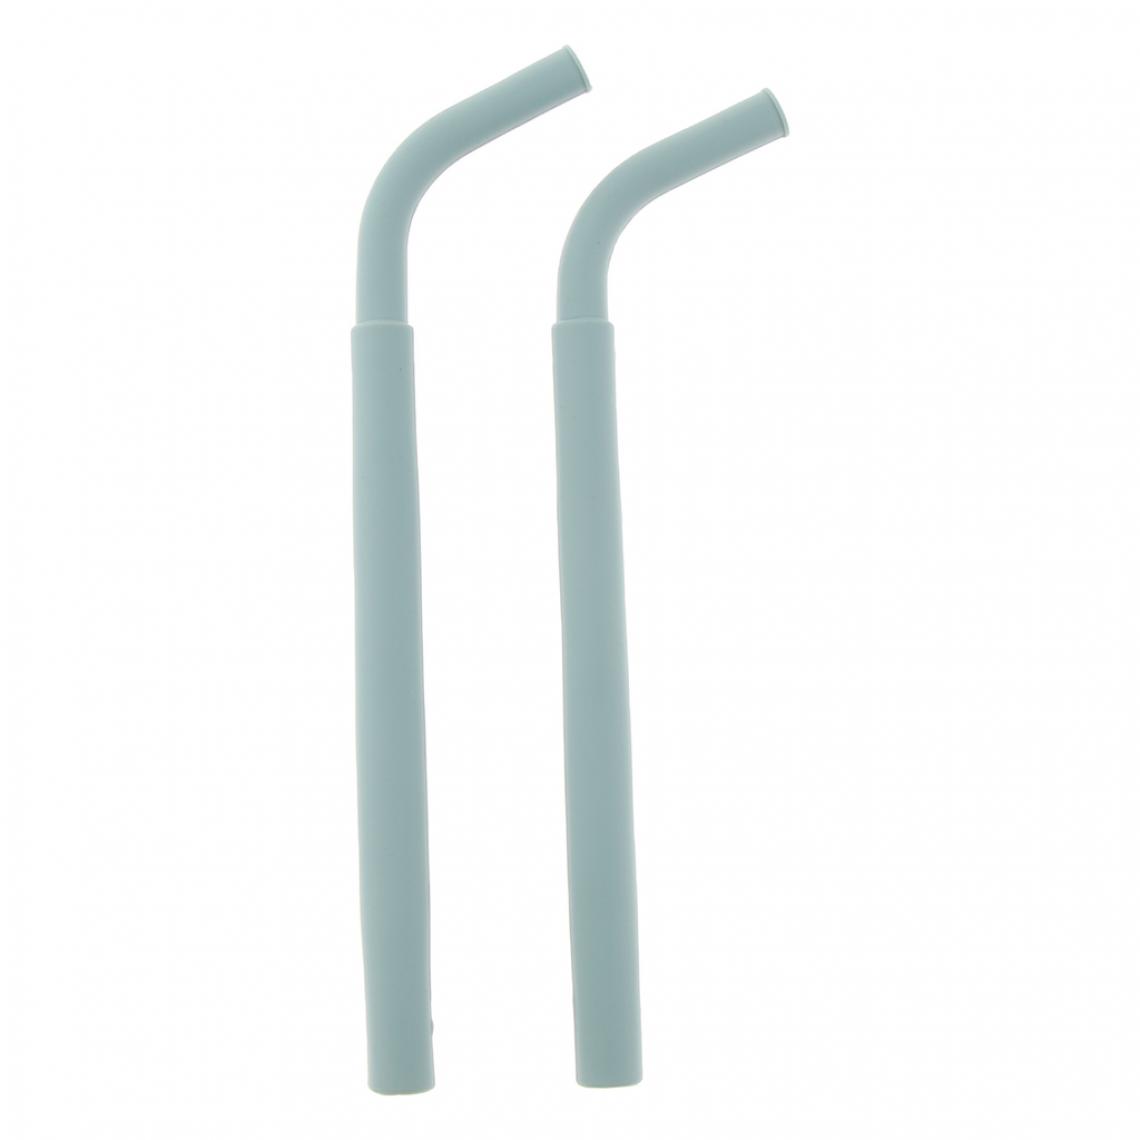 marque generique - 2pcs pailles droites flexibles réutilisables en silicone gris - Kitchenette